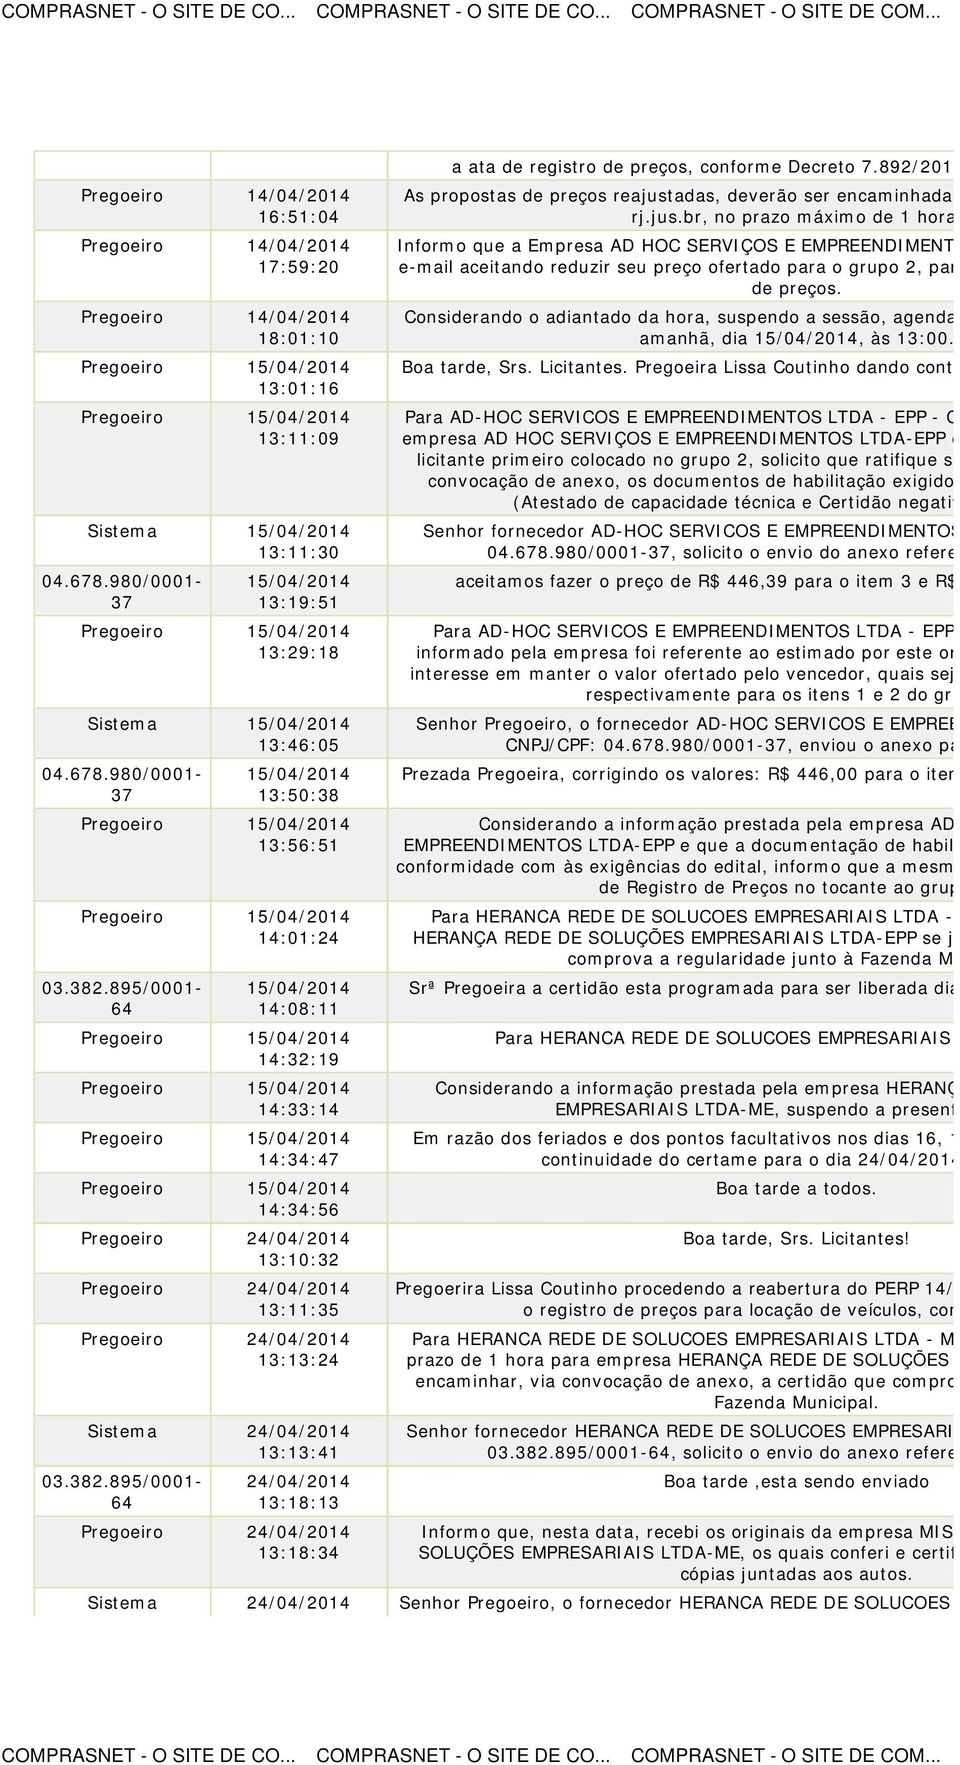 892/2013 e item 10 do As propostas de preços reajustadas, deverão ser encaminhadas para o e rj.jus.br, no prazo máximo de 1 hora.